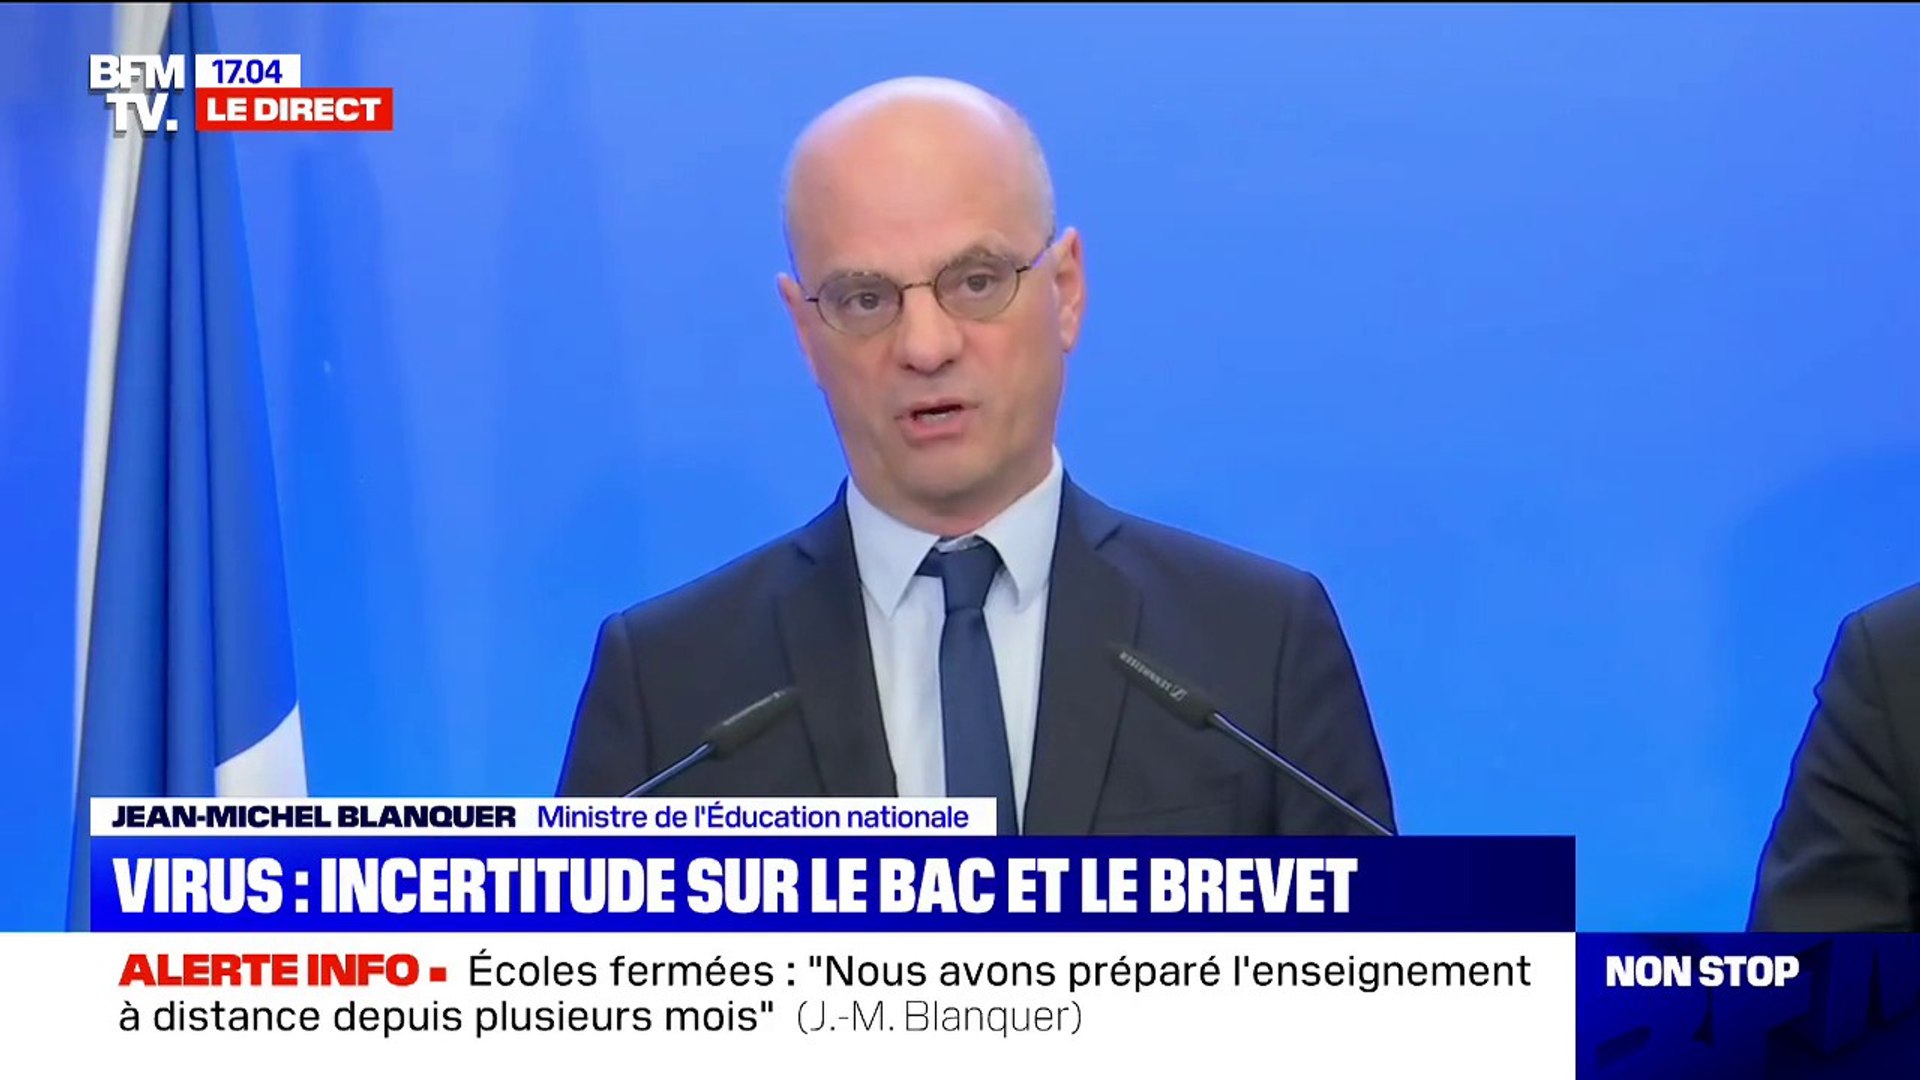 Jean-Michel Blanquer: "Nous avons plusieurs scénarios en fonction des  circonstances" pour le bac et le brevet - Vidéo Dailymotion